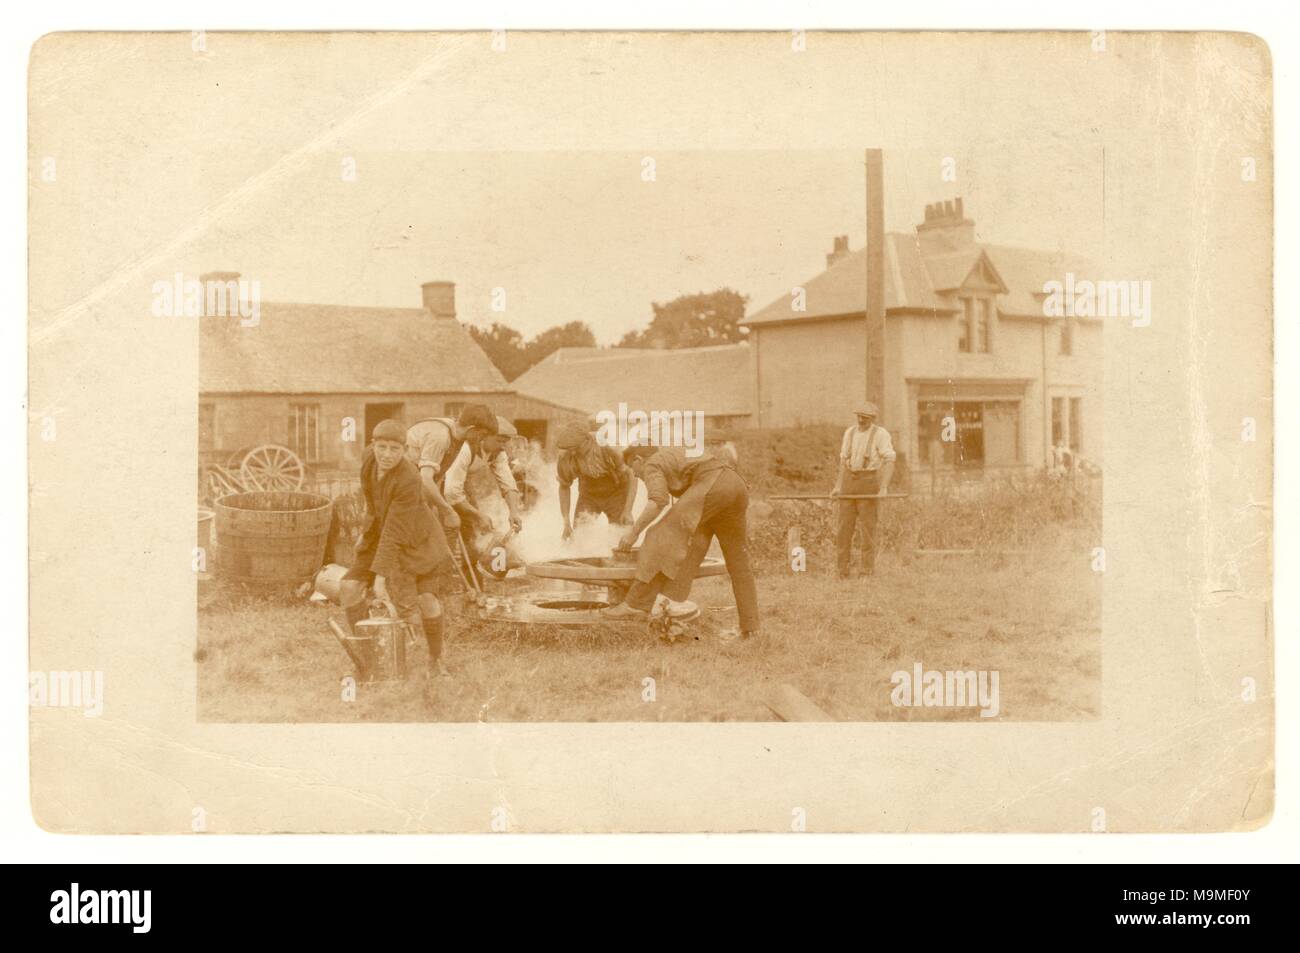 Ursprüngliche Postkarte aus dem frühen 20. Jahrhundert von Handwerkern - Radschreiber/Schmiede und Lehrling, die ein Wagenrad herstellen, beheizte Eisenreifen befestigen und - sie mit Wasser auf das Rad schrumpfen, außerhalb der Werkstatt auf dem Dorfgrün. Großbritannien um 1920 Stockfoto